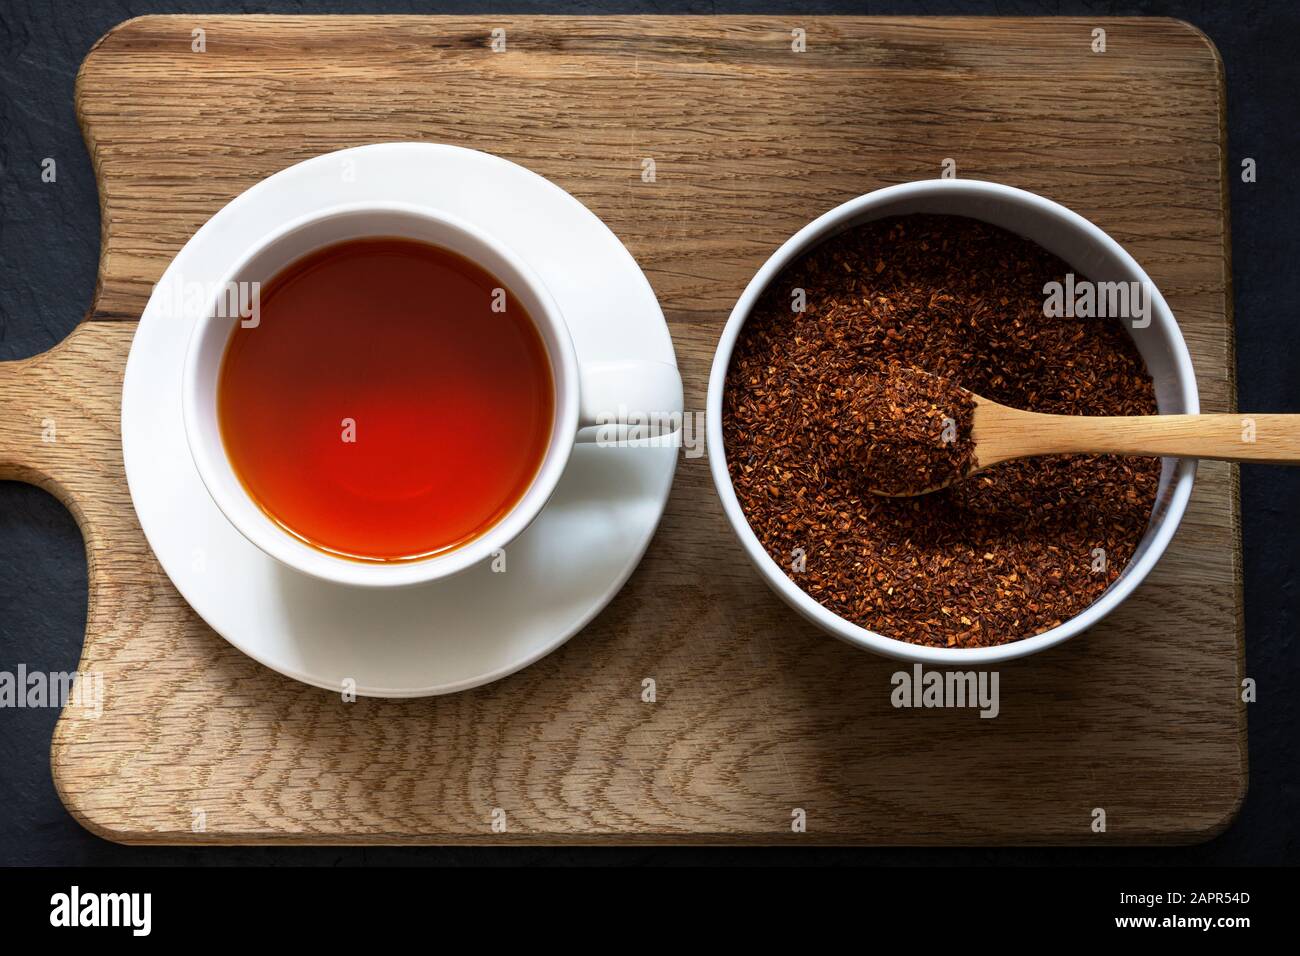 Golpe superior de una taza y platillo que contiene té rooibos (arbusto rojo) con un tazón blanco de hojas en una cuchara de madera. Tabla de madera con pizarra negra Foto de stock